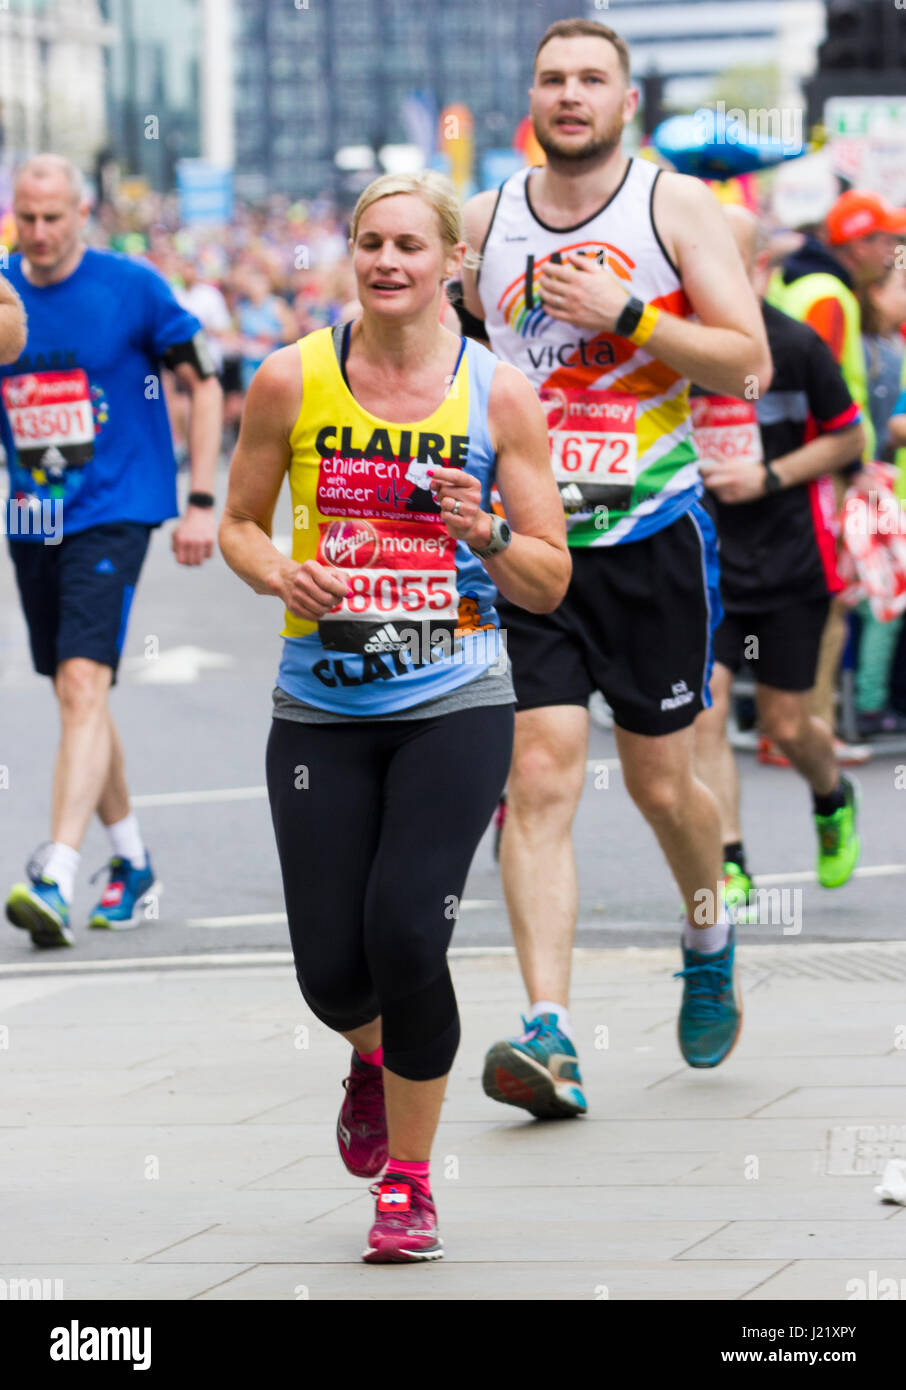 St James park, london, Regno Unito. 23 apr, 2017. migliaia di prendere parte alla trentasettesima maratona di Londra credito: Alan fraser/alamy live news Foto Stock